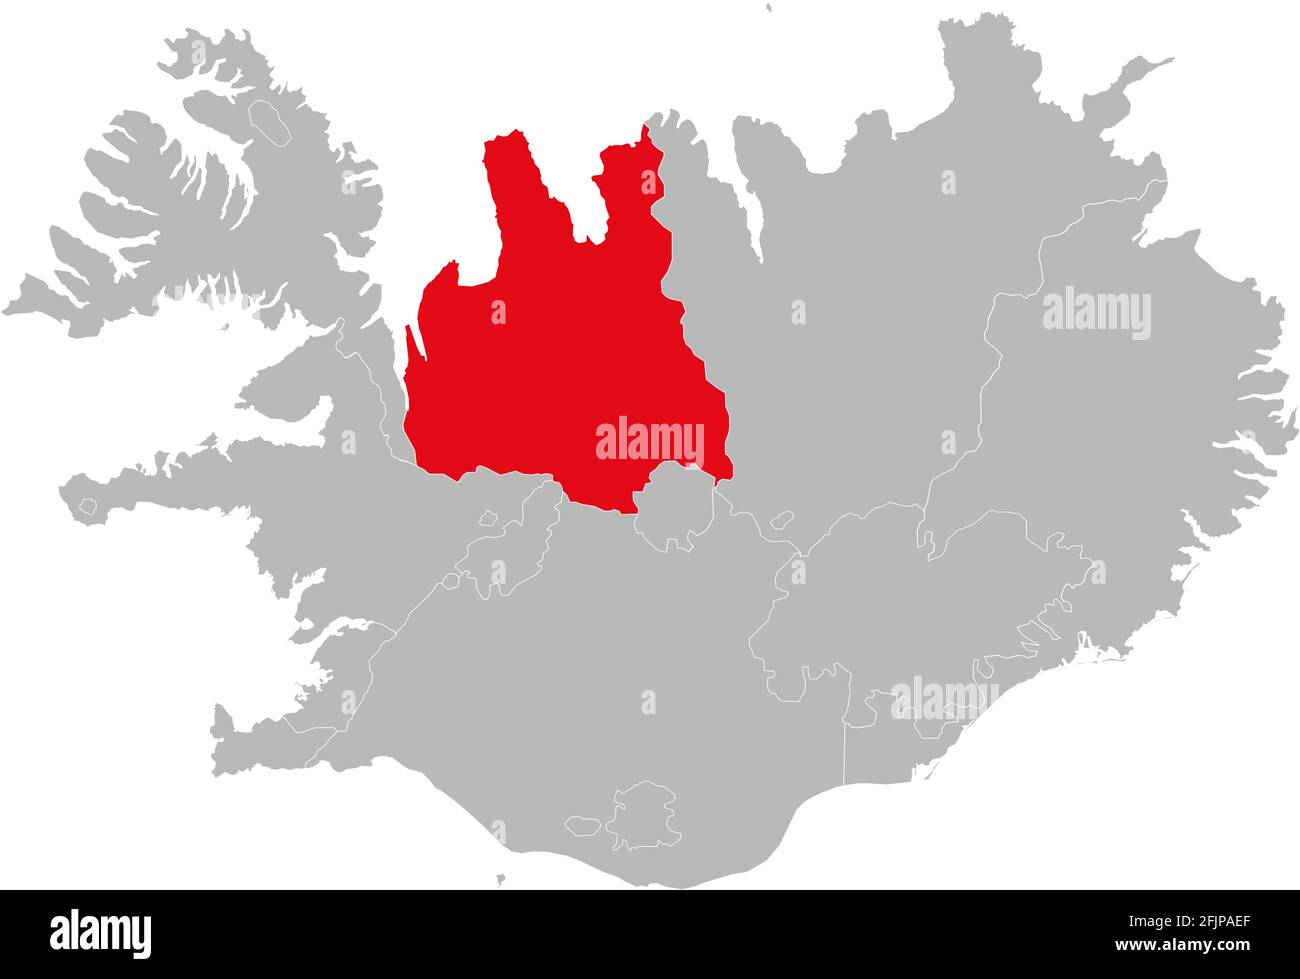 Nordurland Vestra Provinzen isoliert auf Island Karte. Grauer Hintergrund. Hintergründe und Hintergrundbilder. Stock Vektor